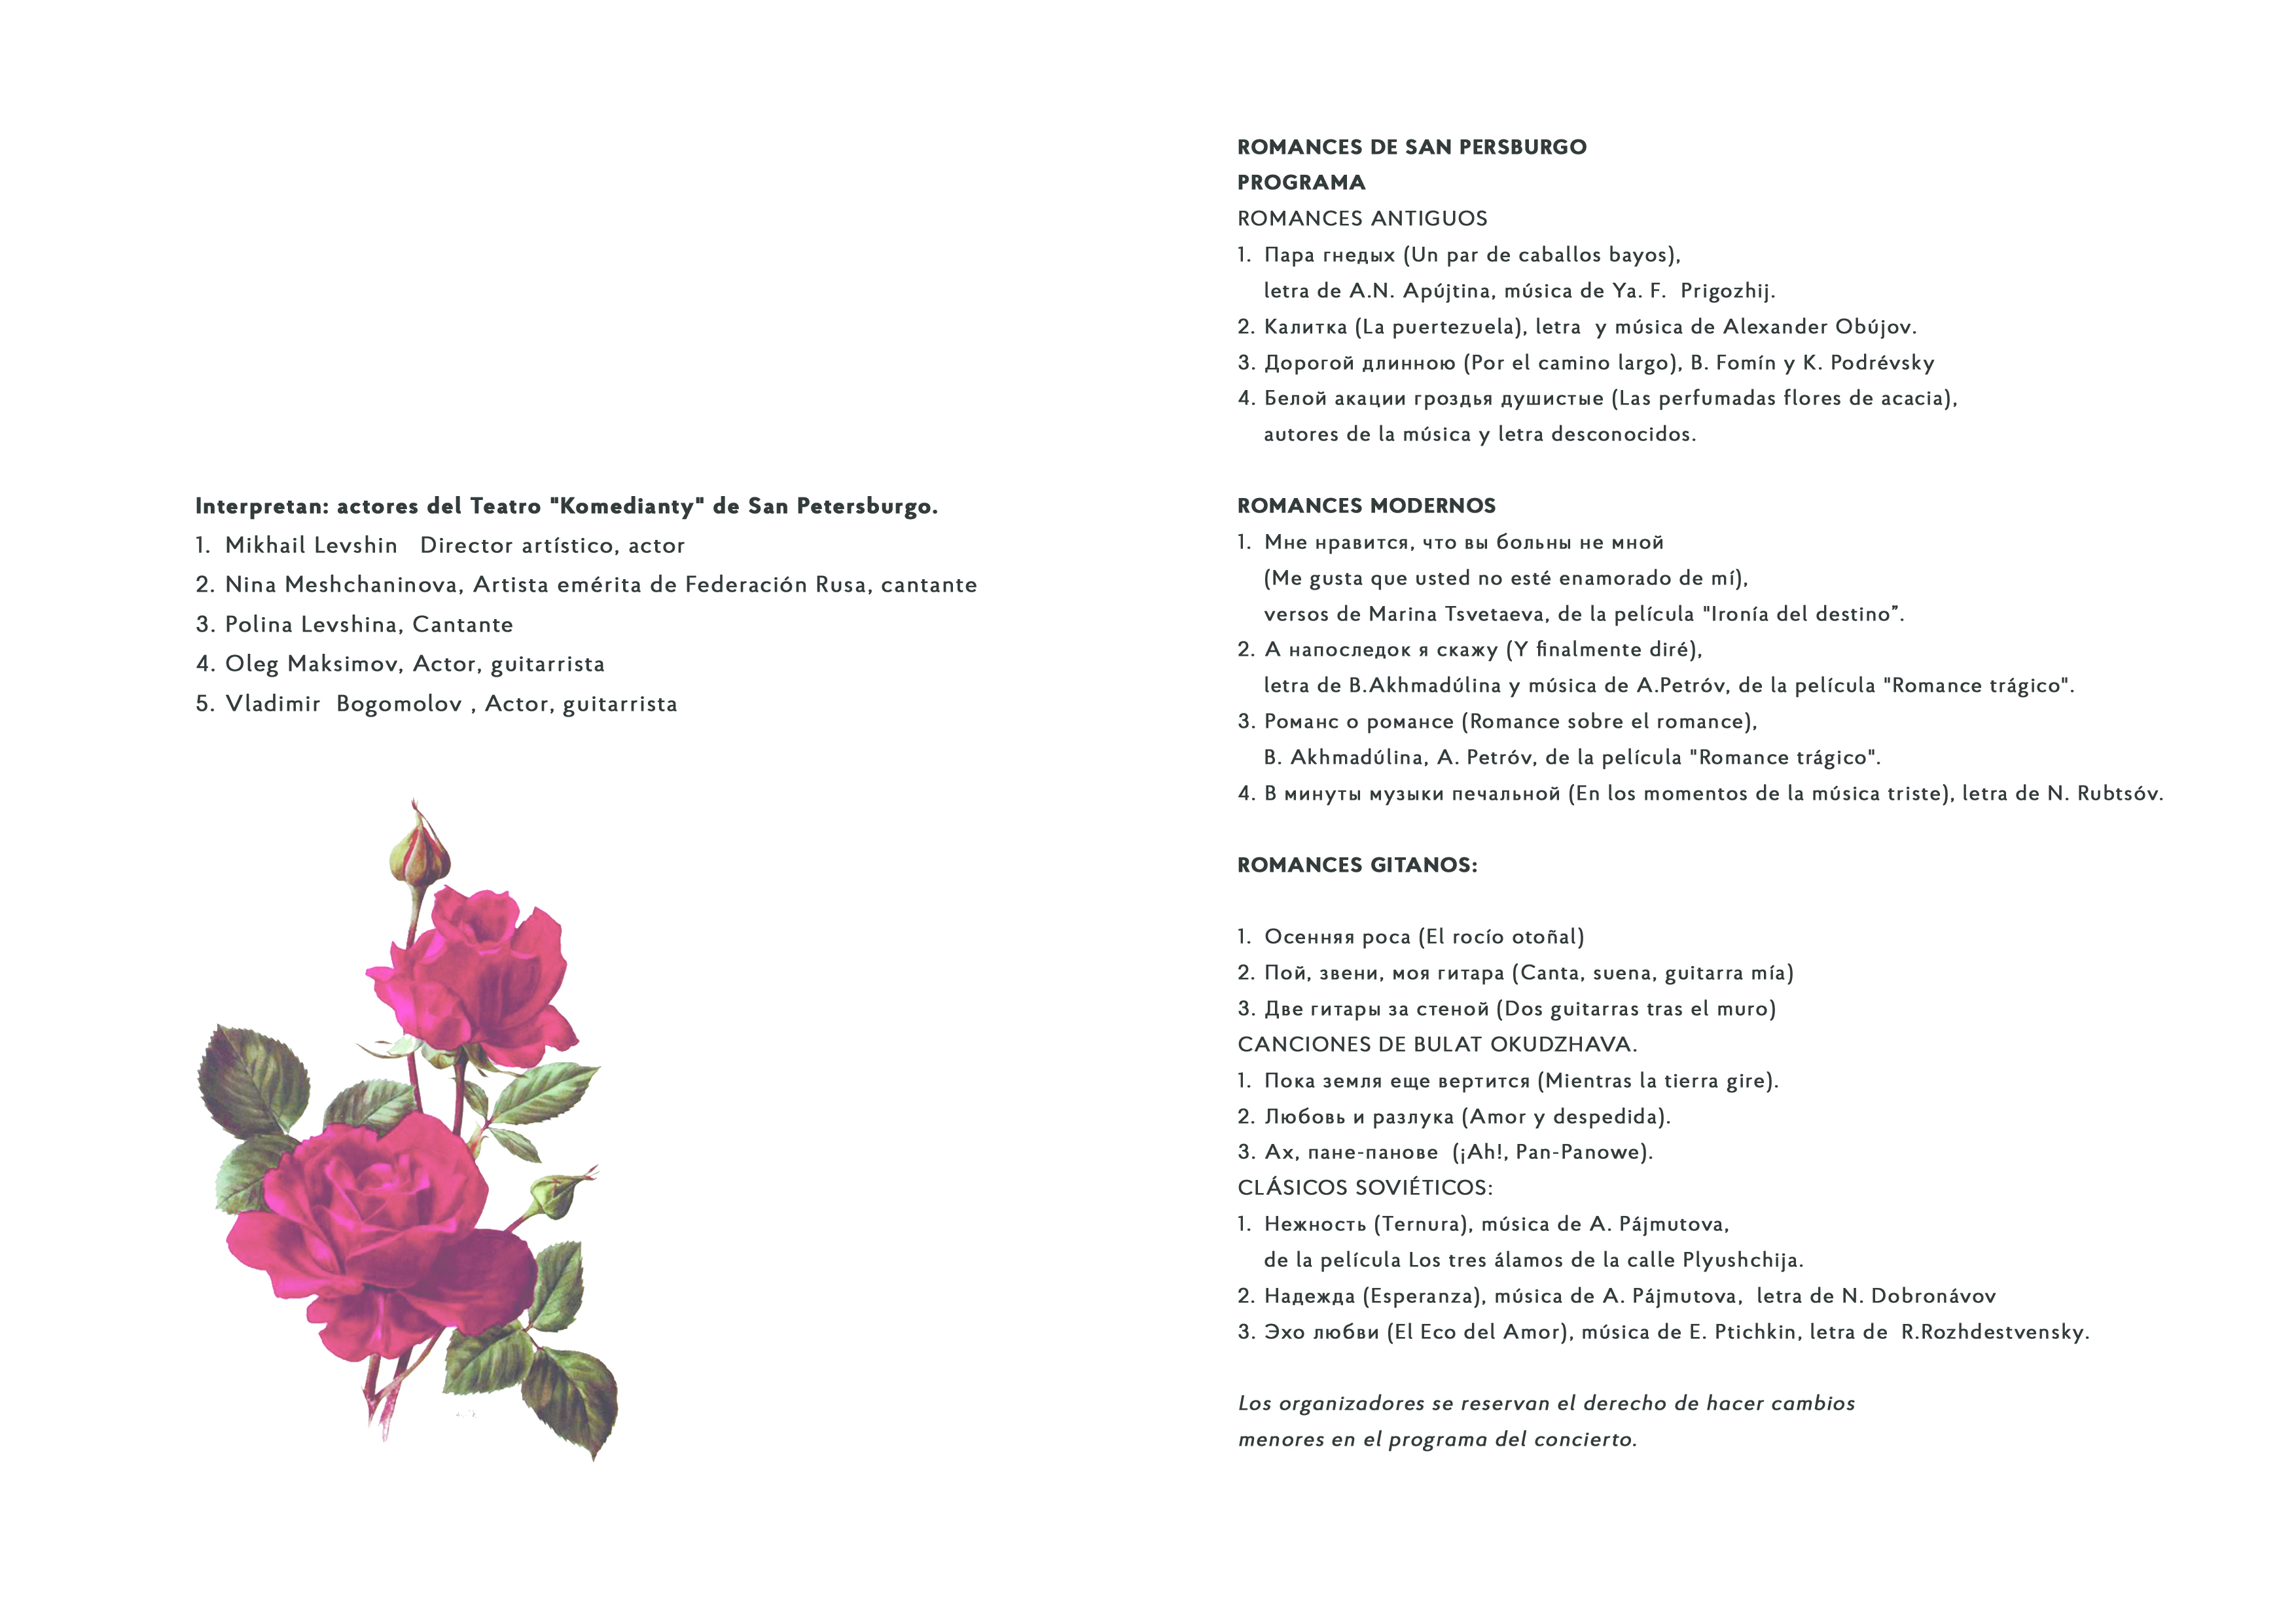 Programa del concierto Romances de San Petersburgo